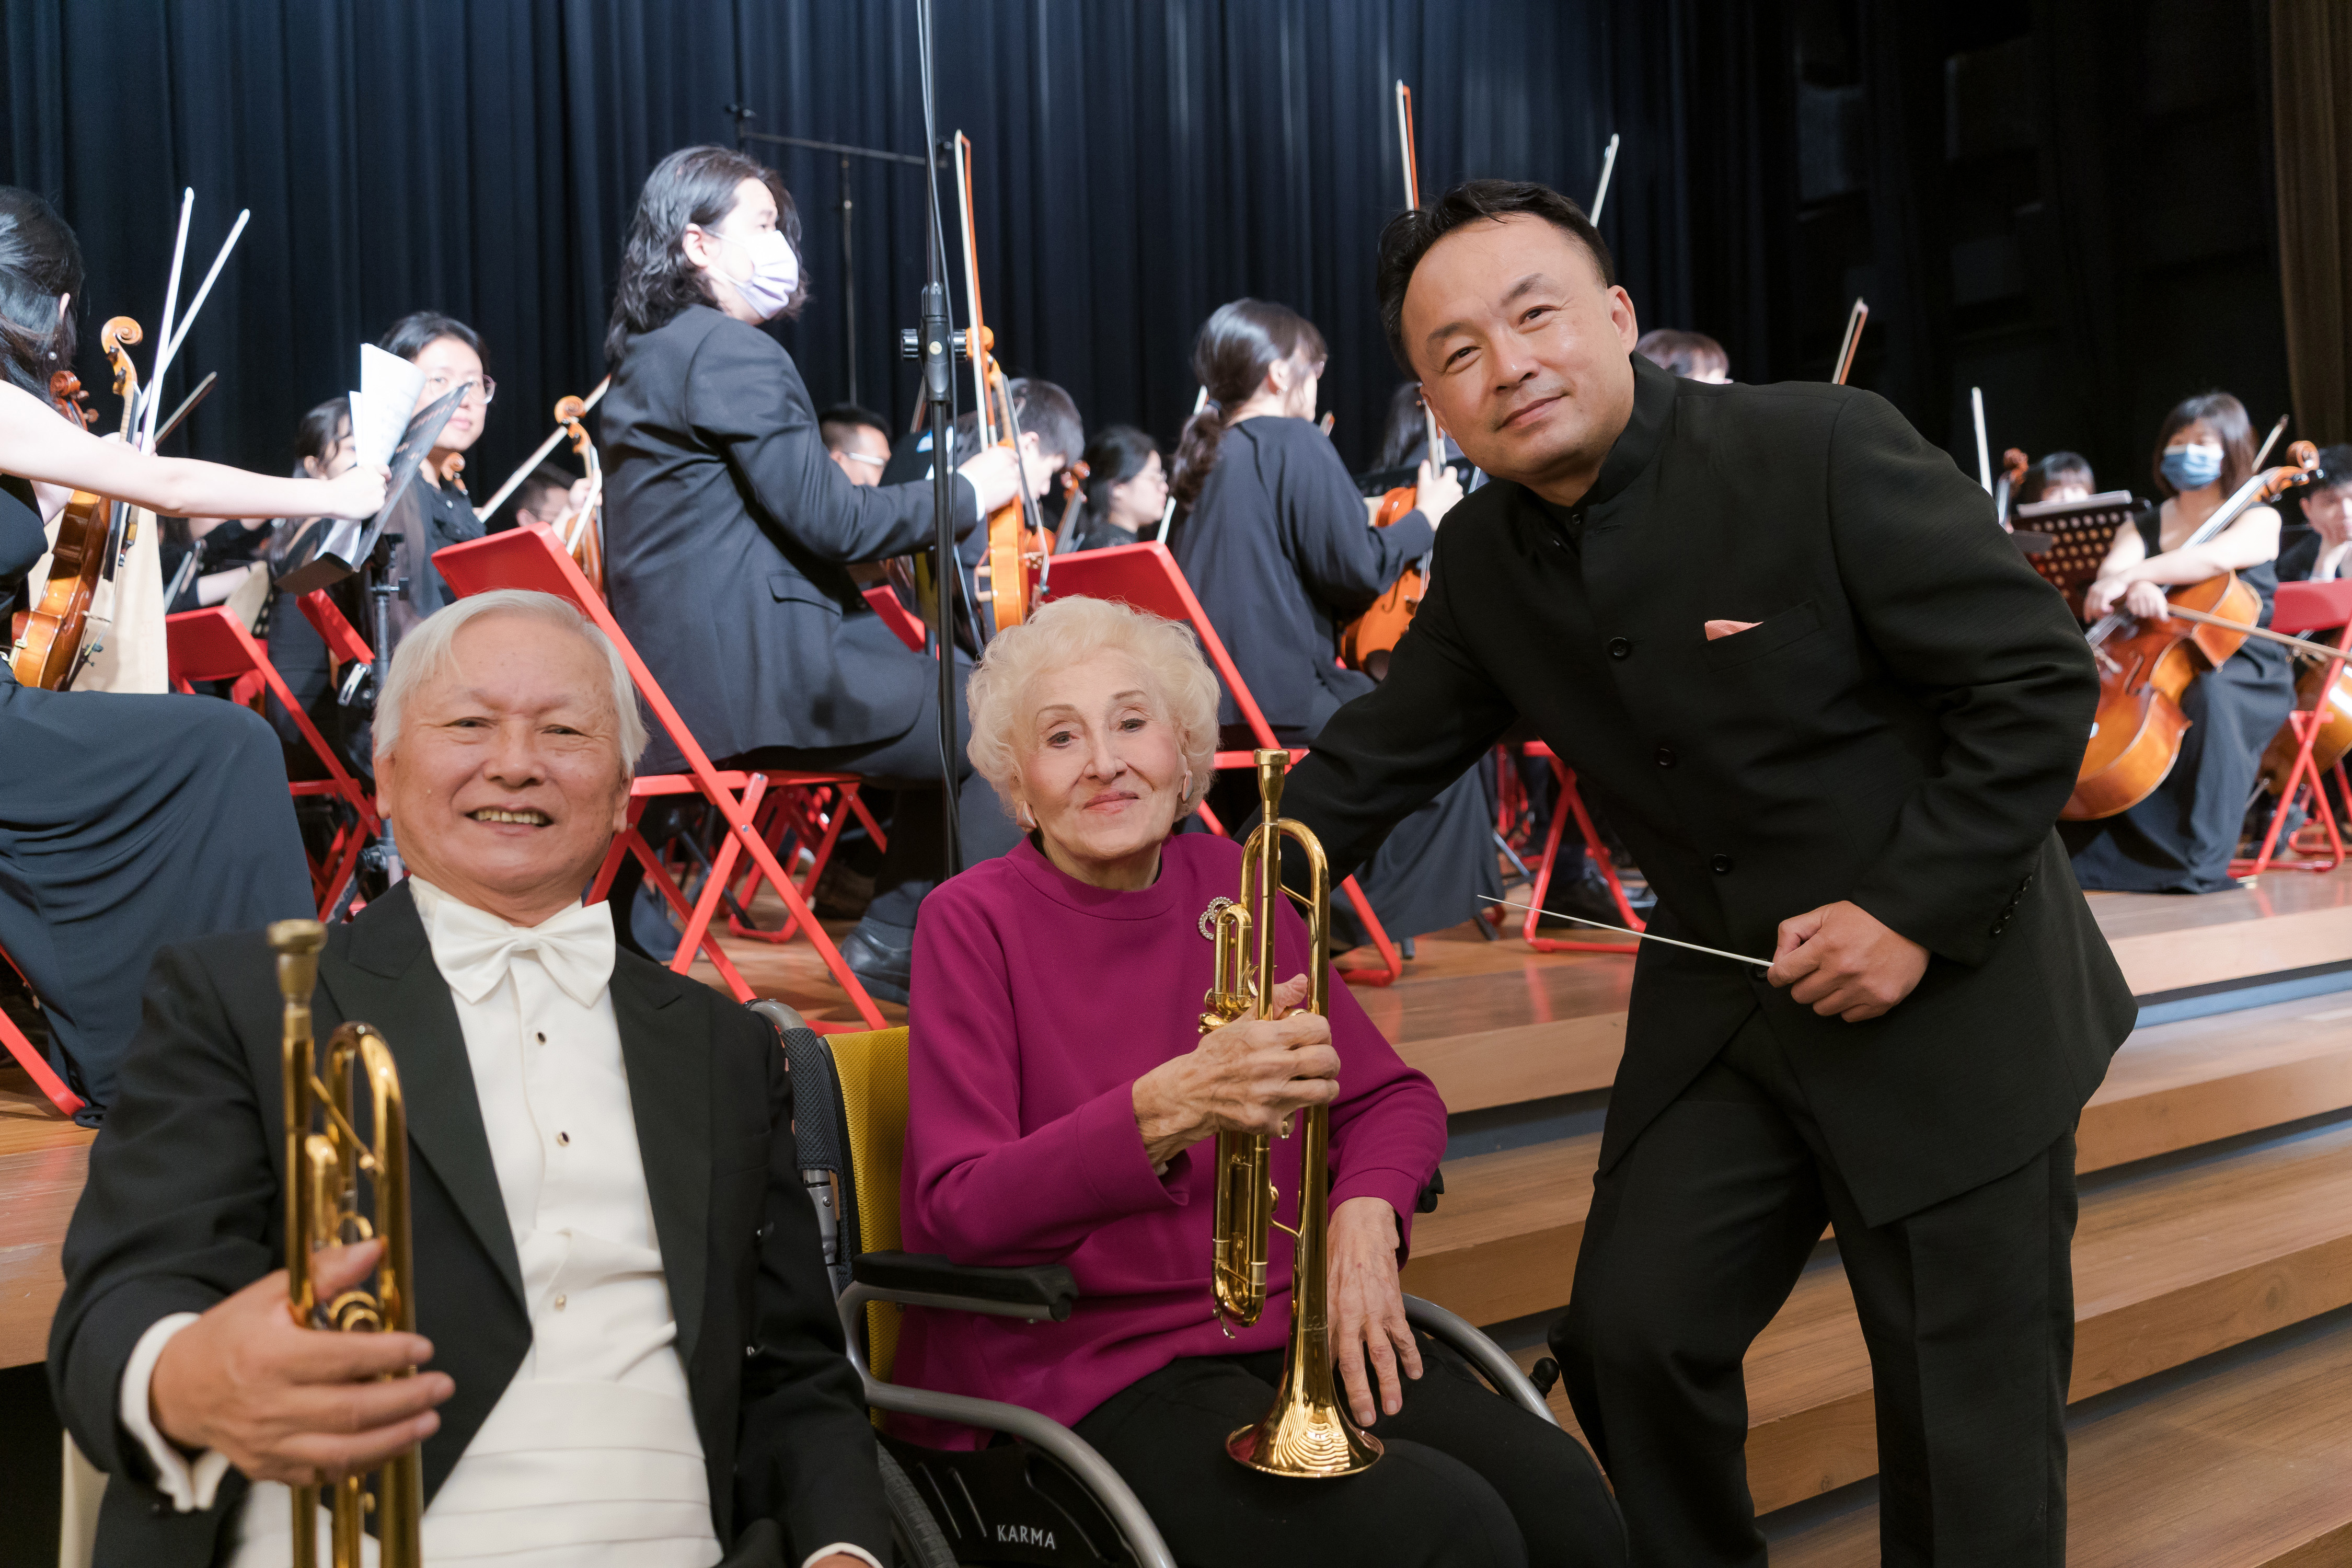 謝北光老師(左)、彭蒙惠老師、歐陽慧剛老師(右)於實踐大學交響樂團與橙樂管弦樂團交流音樂會。